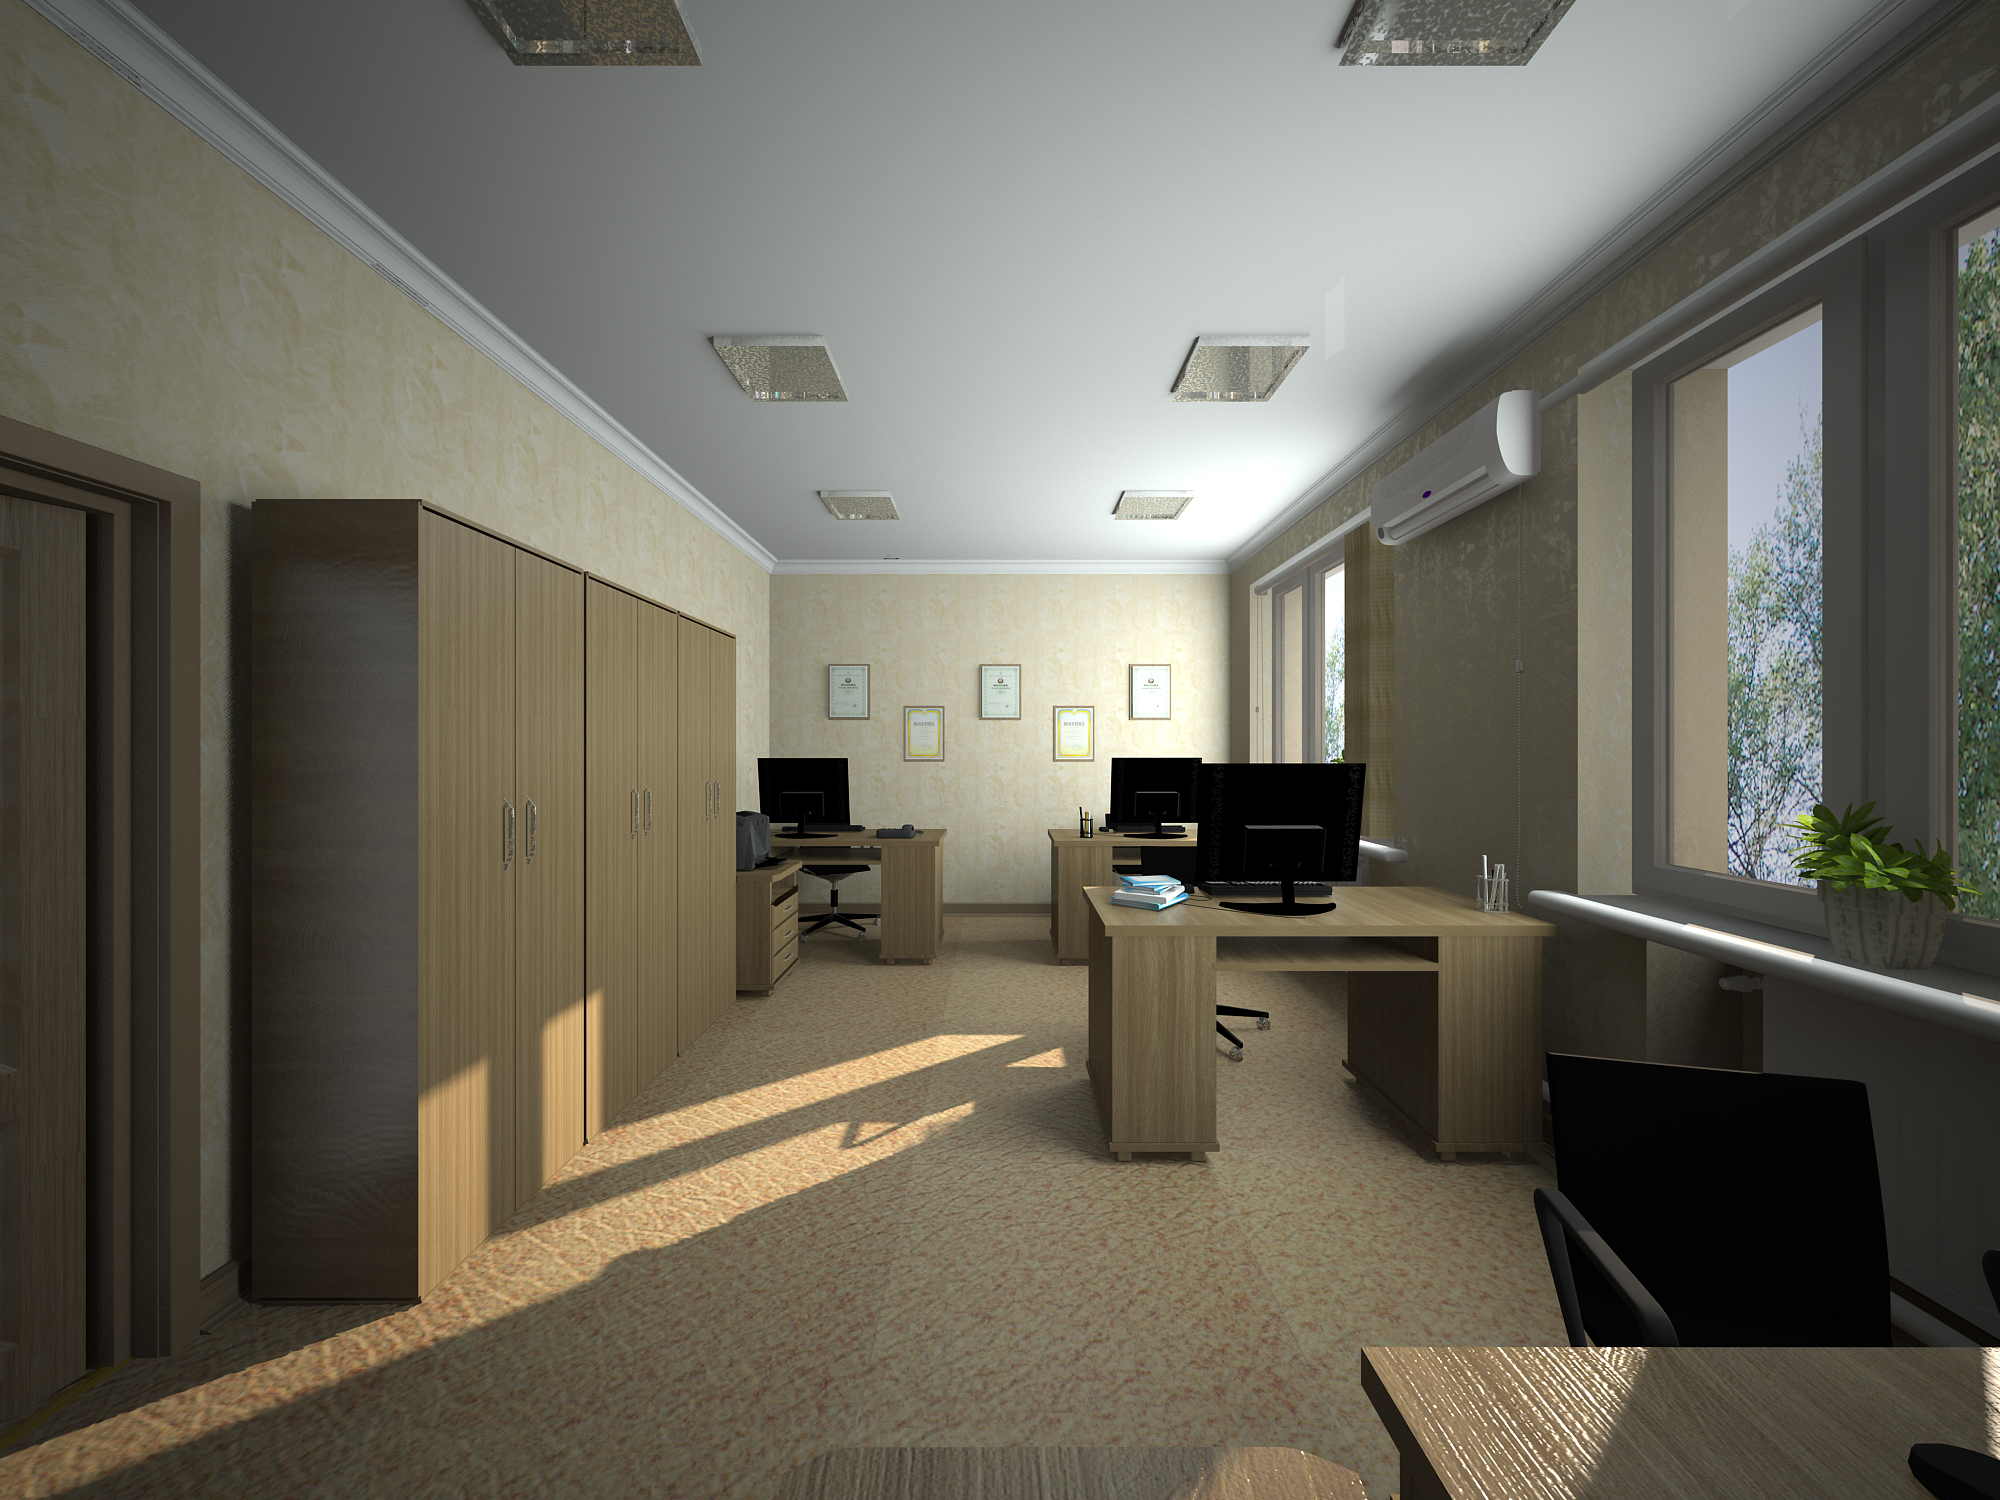 Slavyansk ofisi in 3d max vray 3.0 resim